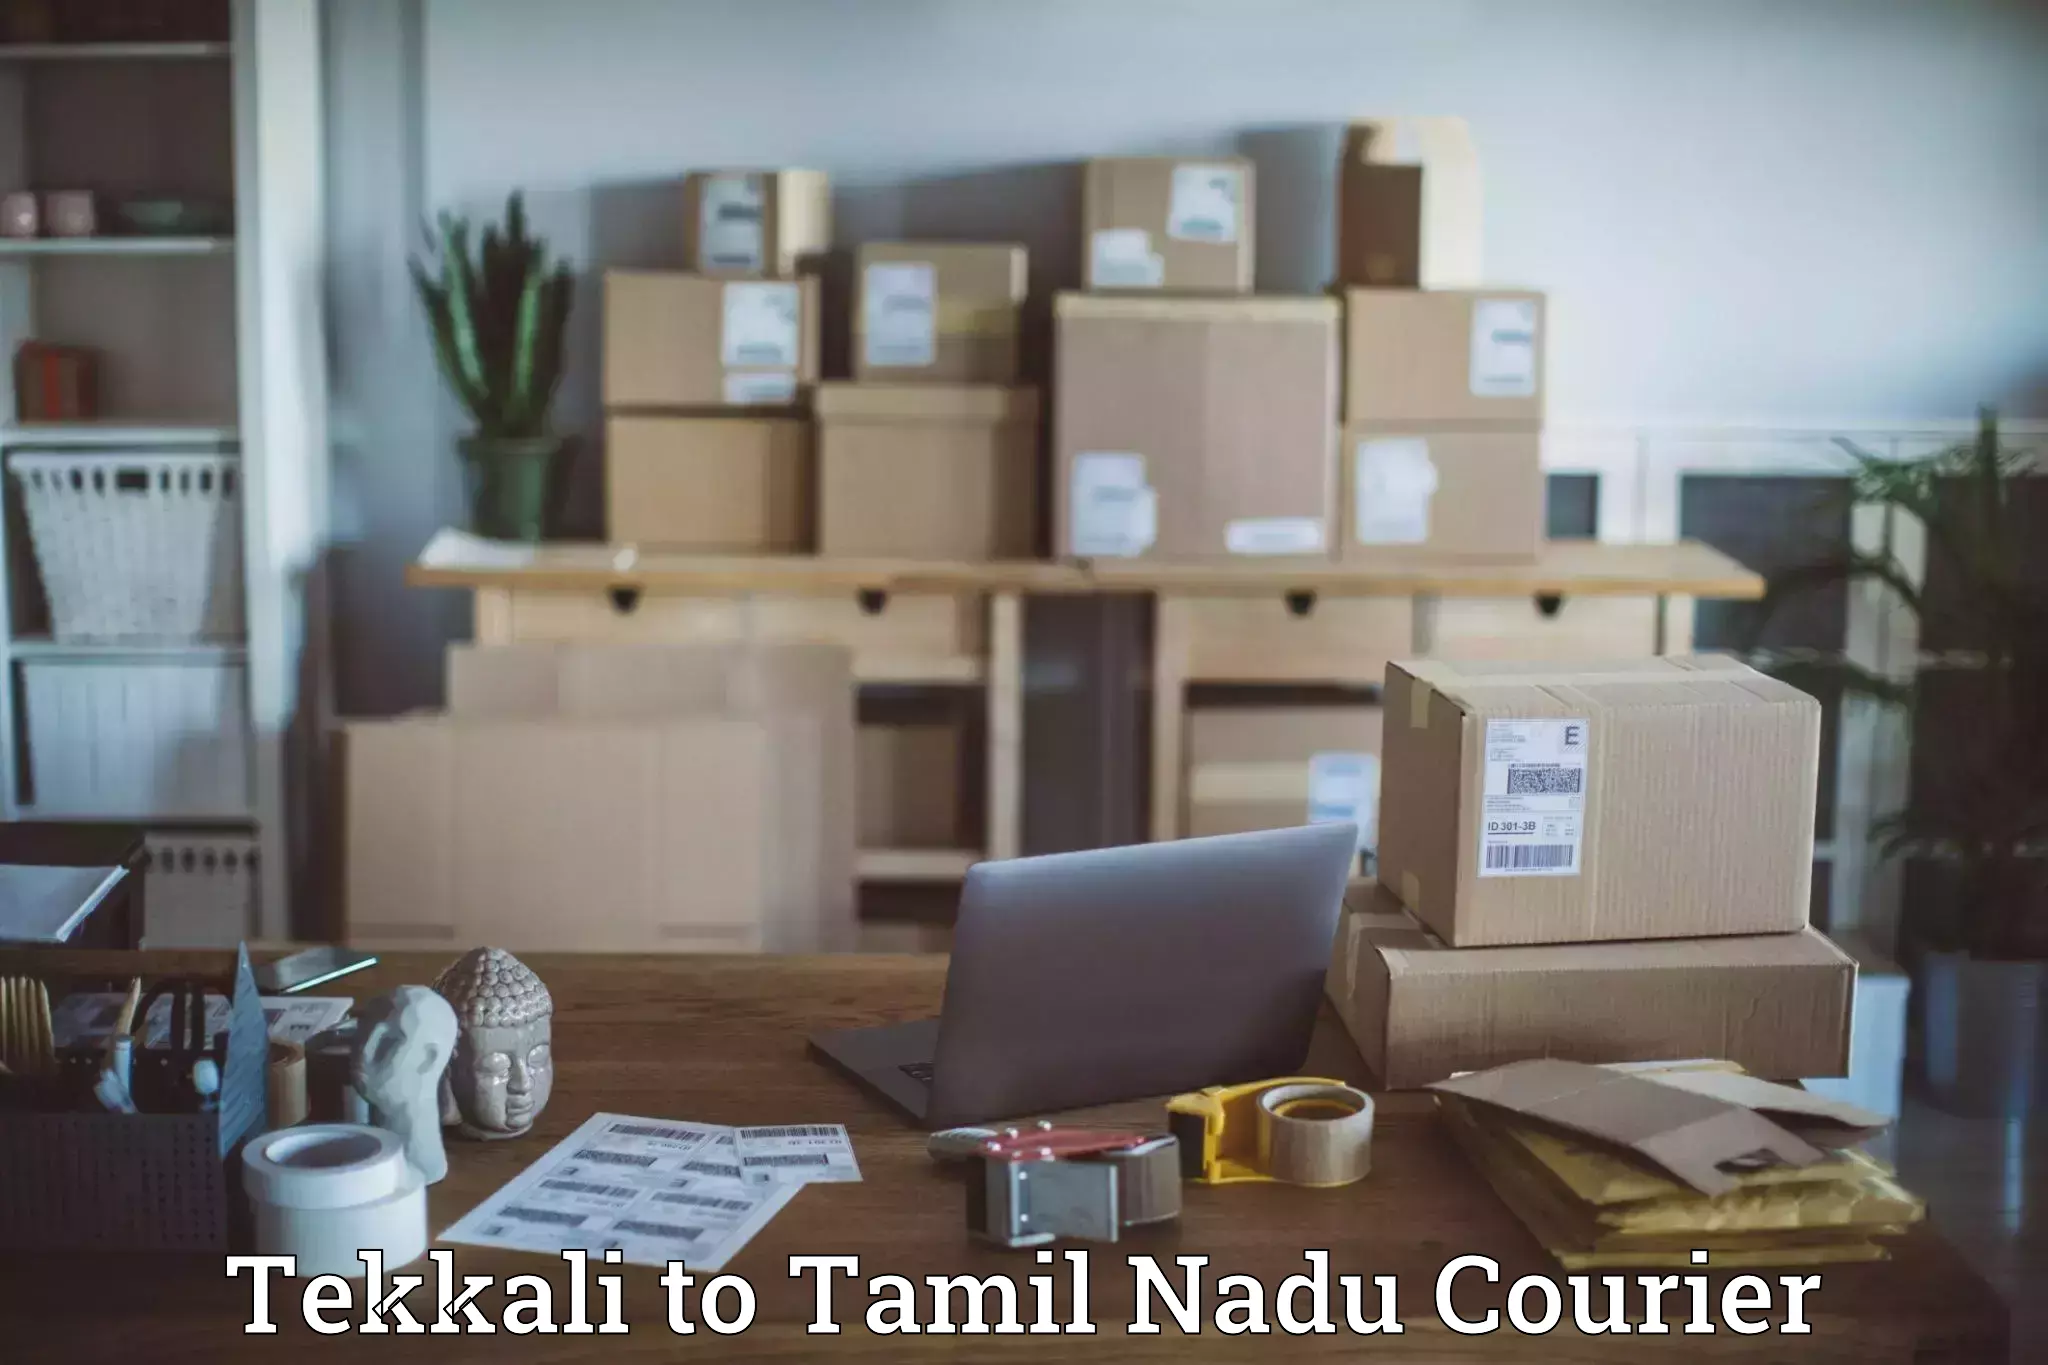 Global shipping networks Tekkali to Tirukalukundram